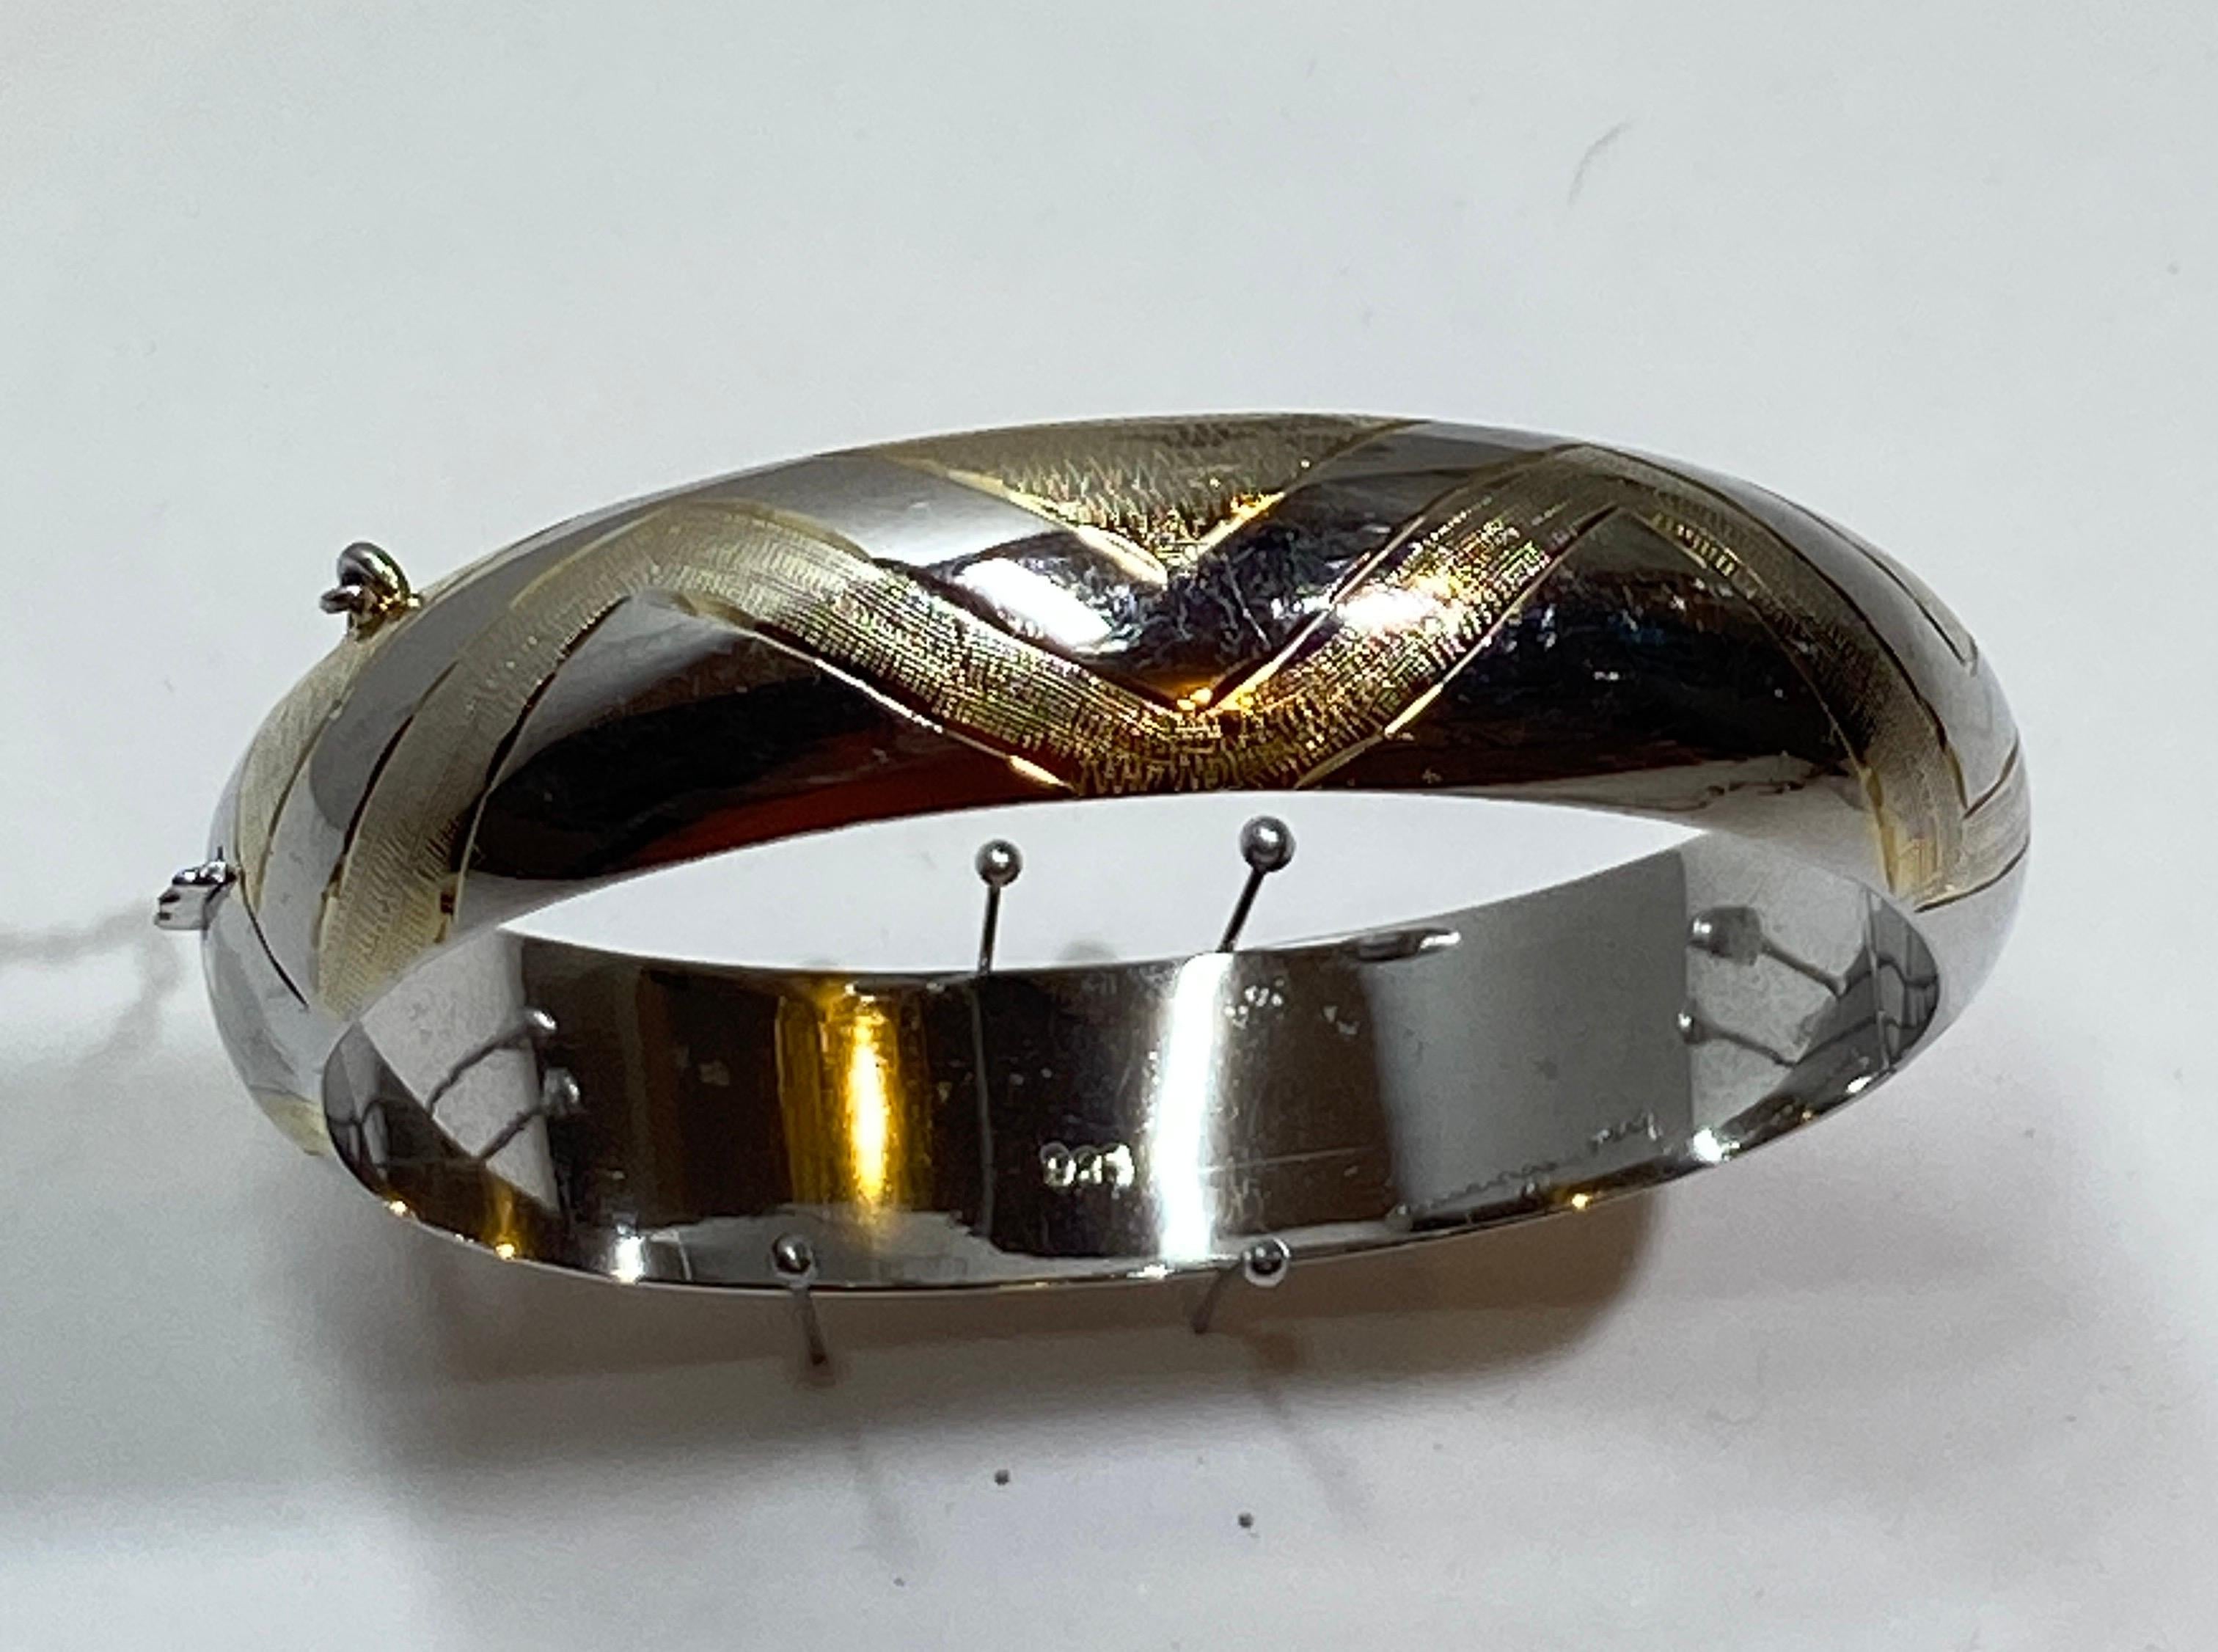 Wunderbar und schön detaillierte Sterling Silber Armband hat filigrane Design mit 14k Gelbgold innerhalb akzentuiert. Die Sicherheitskette ist ebenfalls aus Sterlingsilber. Der Umfang beträgt 7 1/2 Zoll. Die Breite beträgt 5/8 eines Zolls.